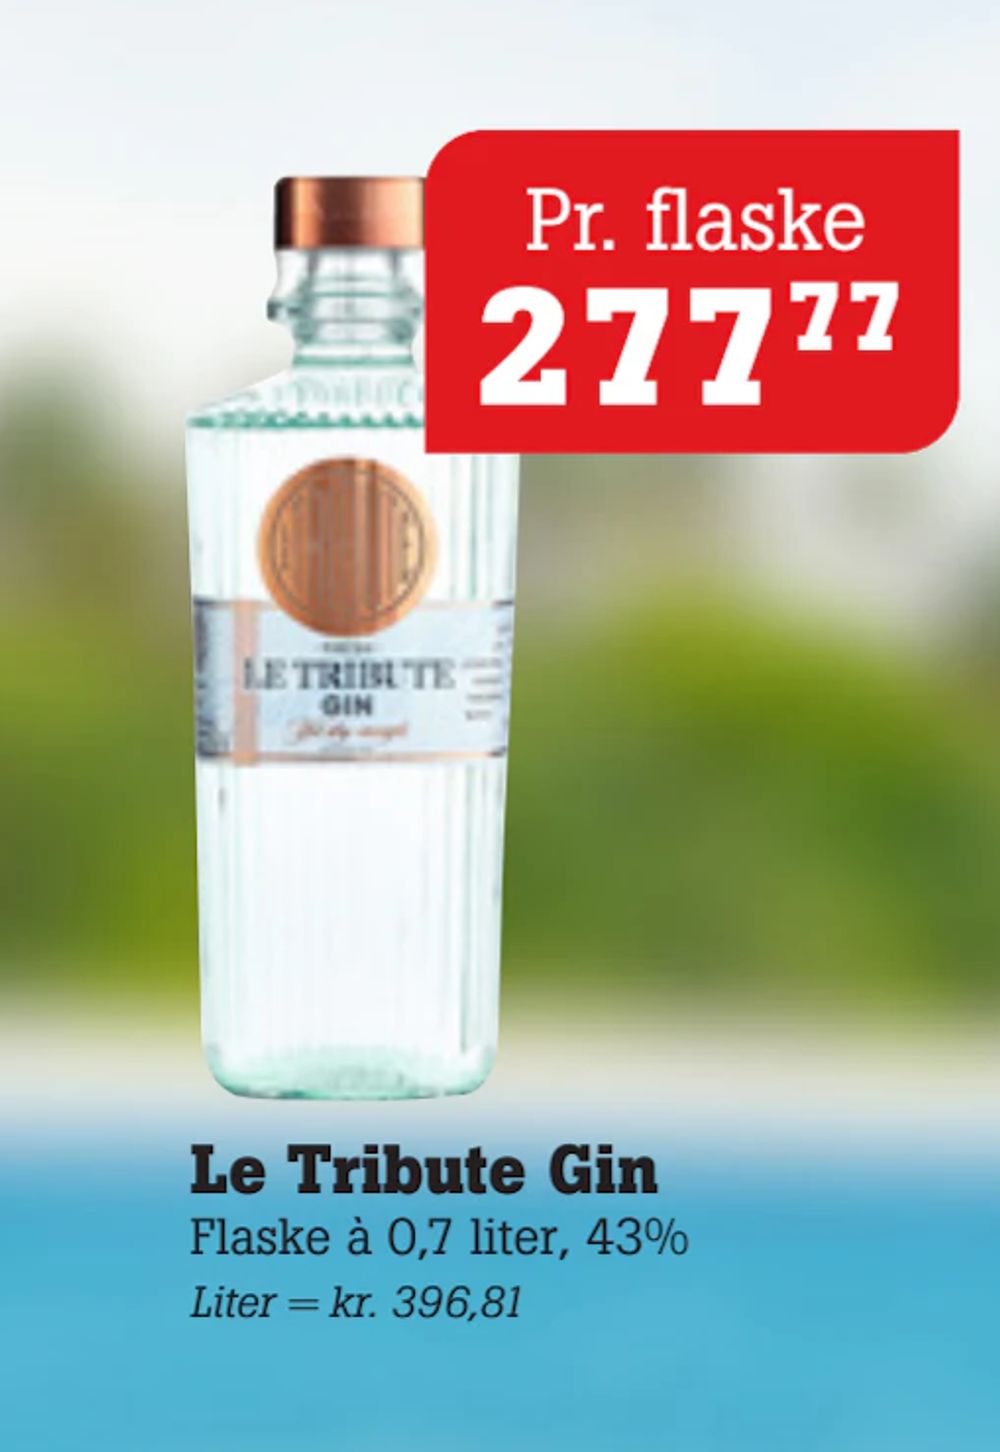 Tilbud på Le Tribute Gin fra Poetzsch Padborg til 277,77 kr.